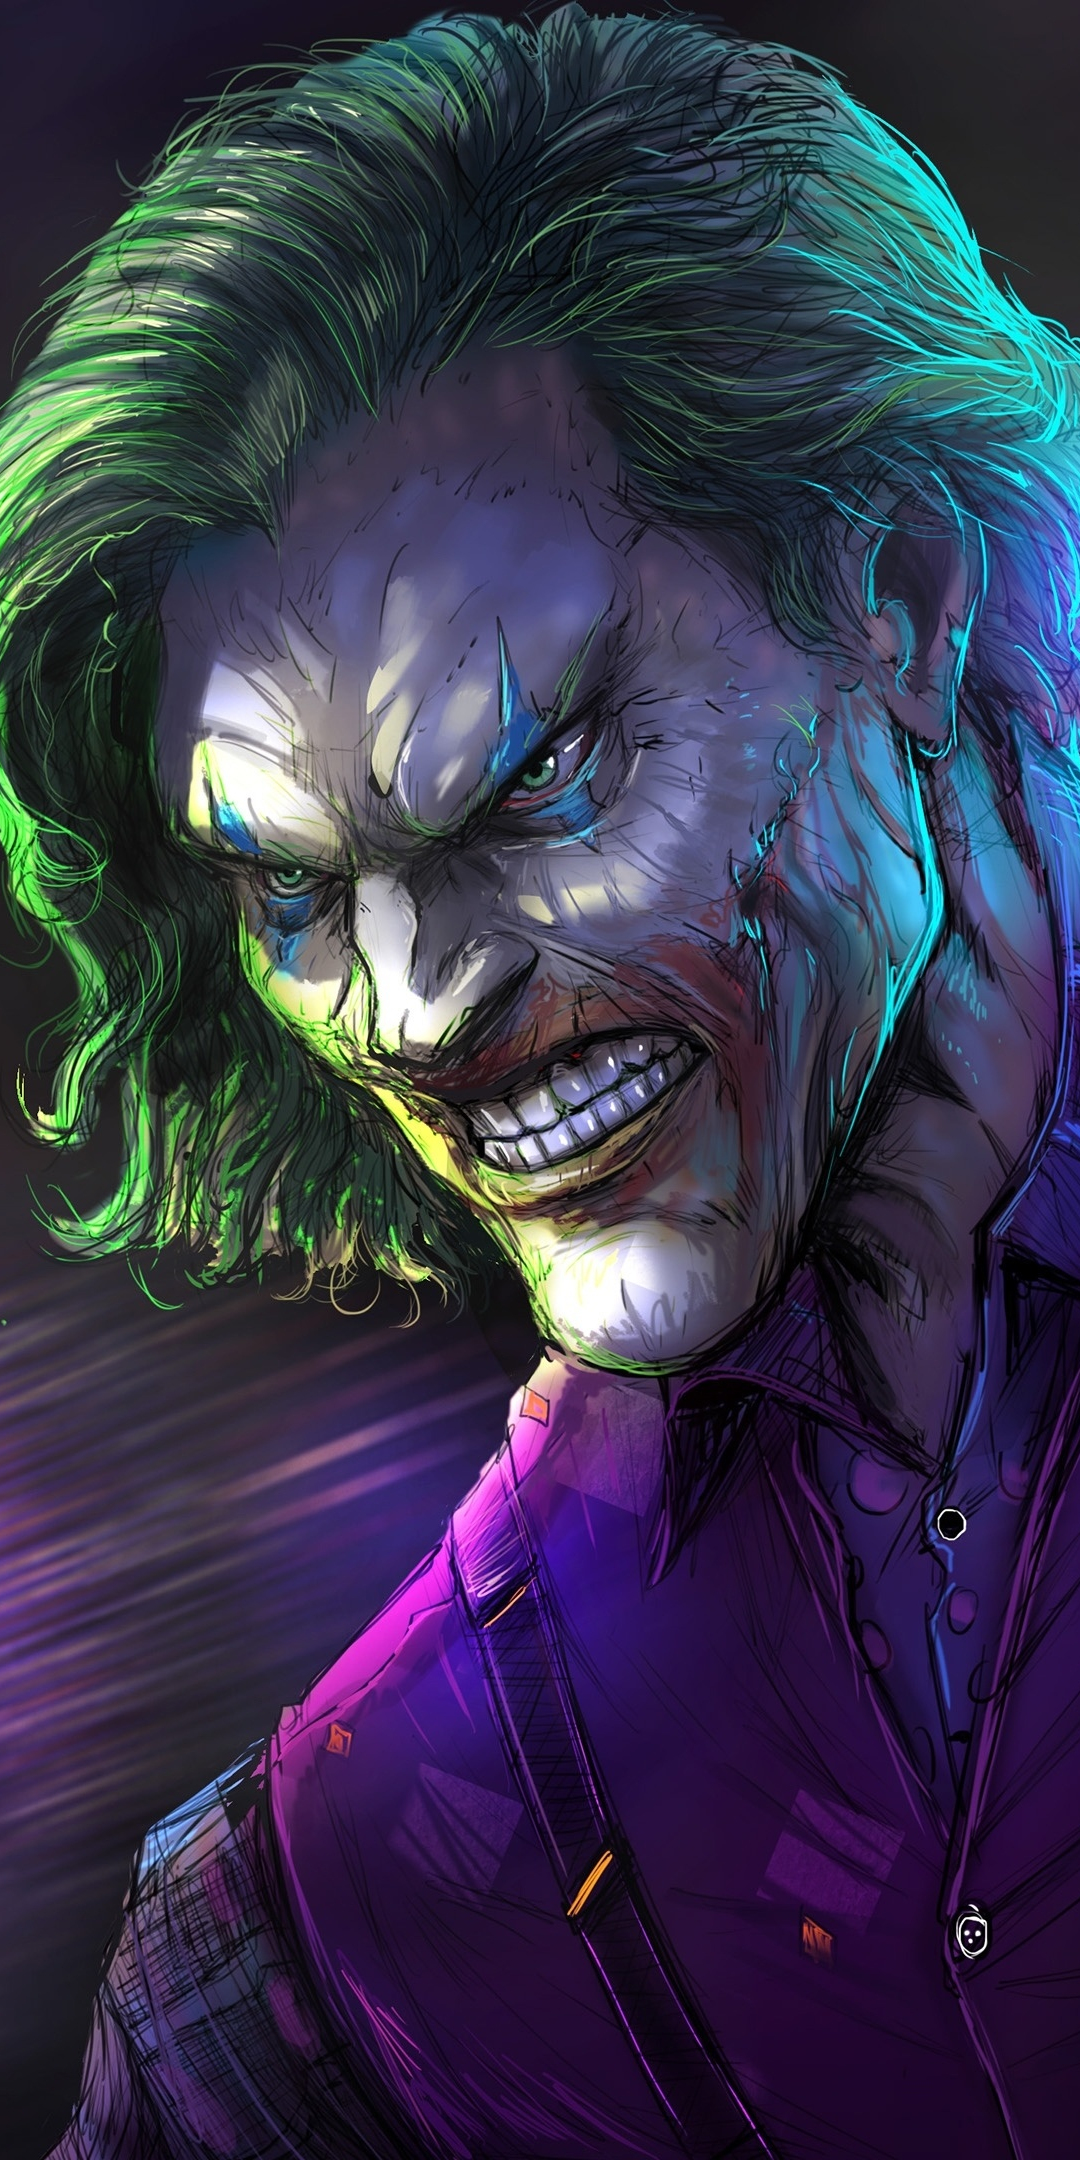 Angry joker, villain, gree hair, villain, dc comics, 1080x2160 wallpaper